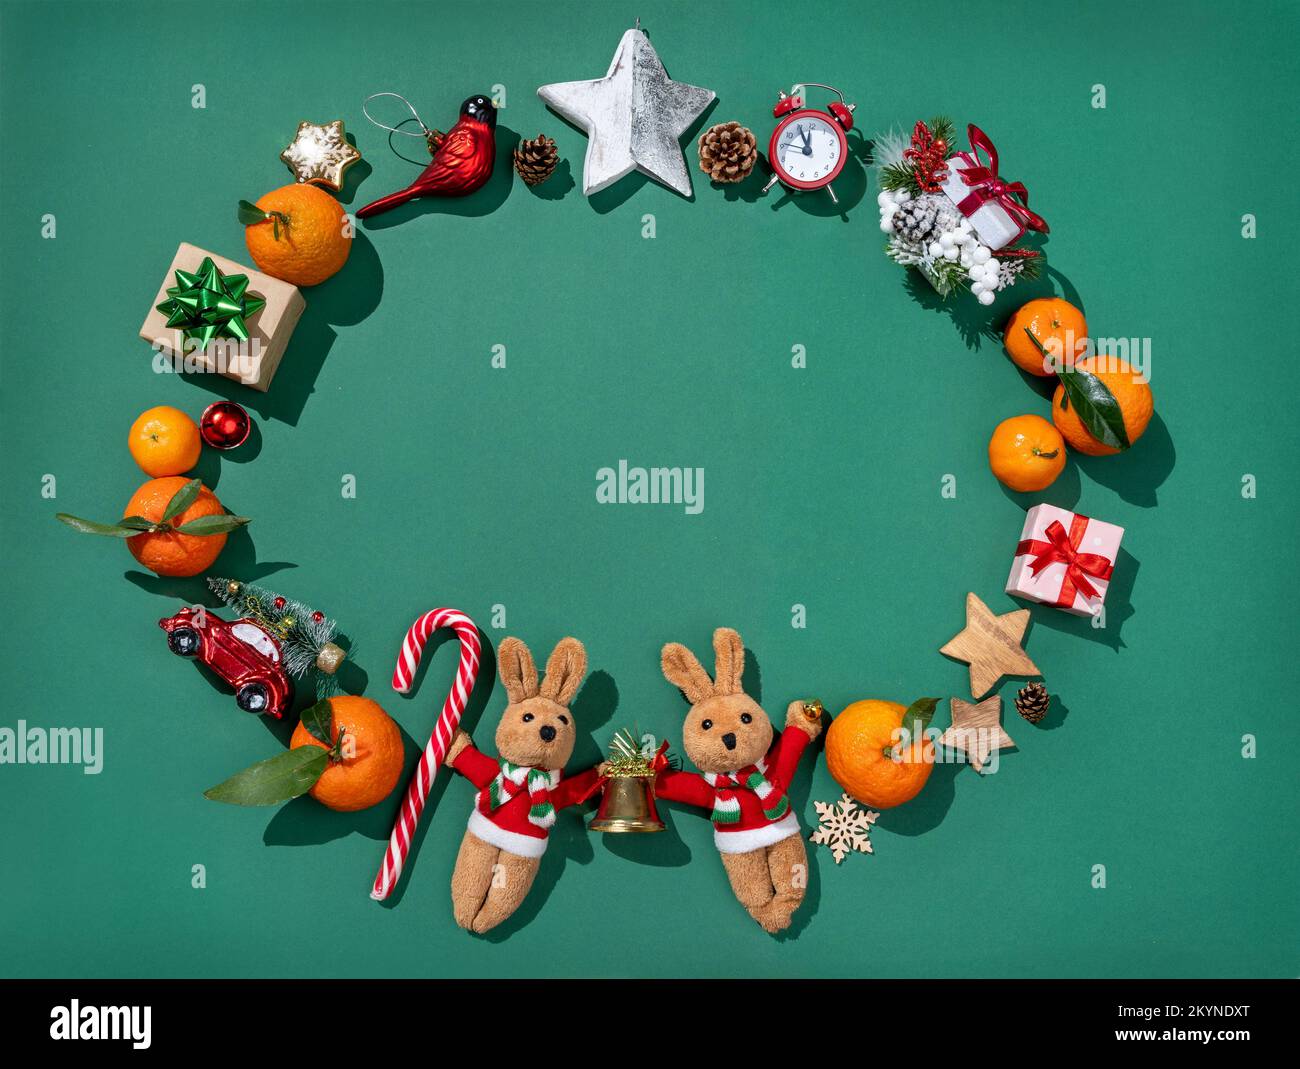 Décorations de Noël : jouets en sapin, mandarines, boîtes-cadeaux sur fond vert. Joyeux Noël et bonne année concept Banque D'Images